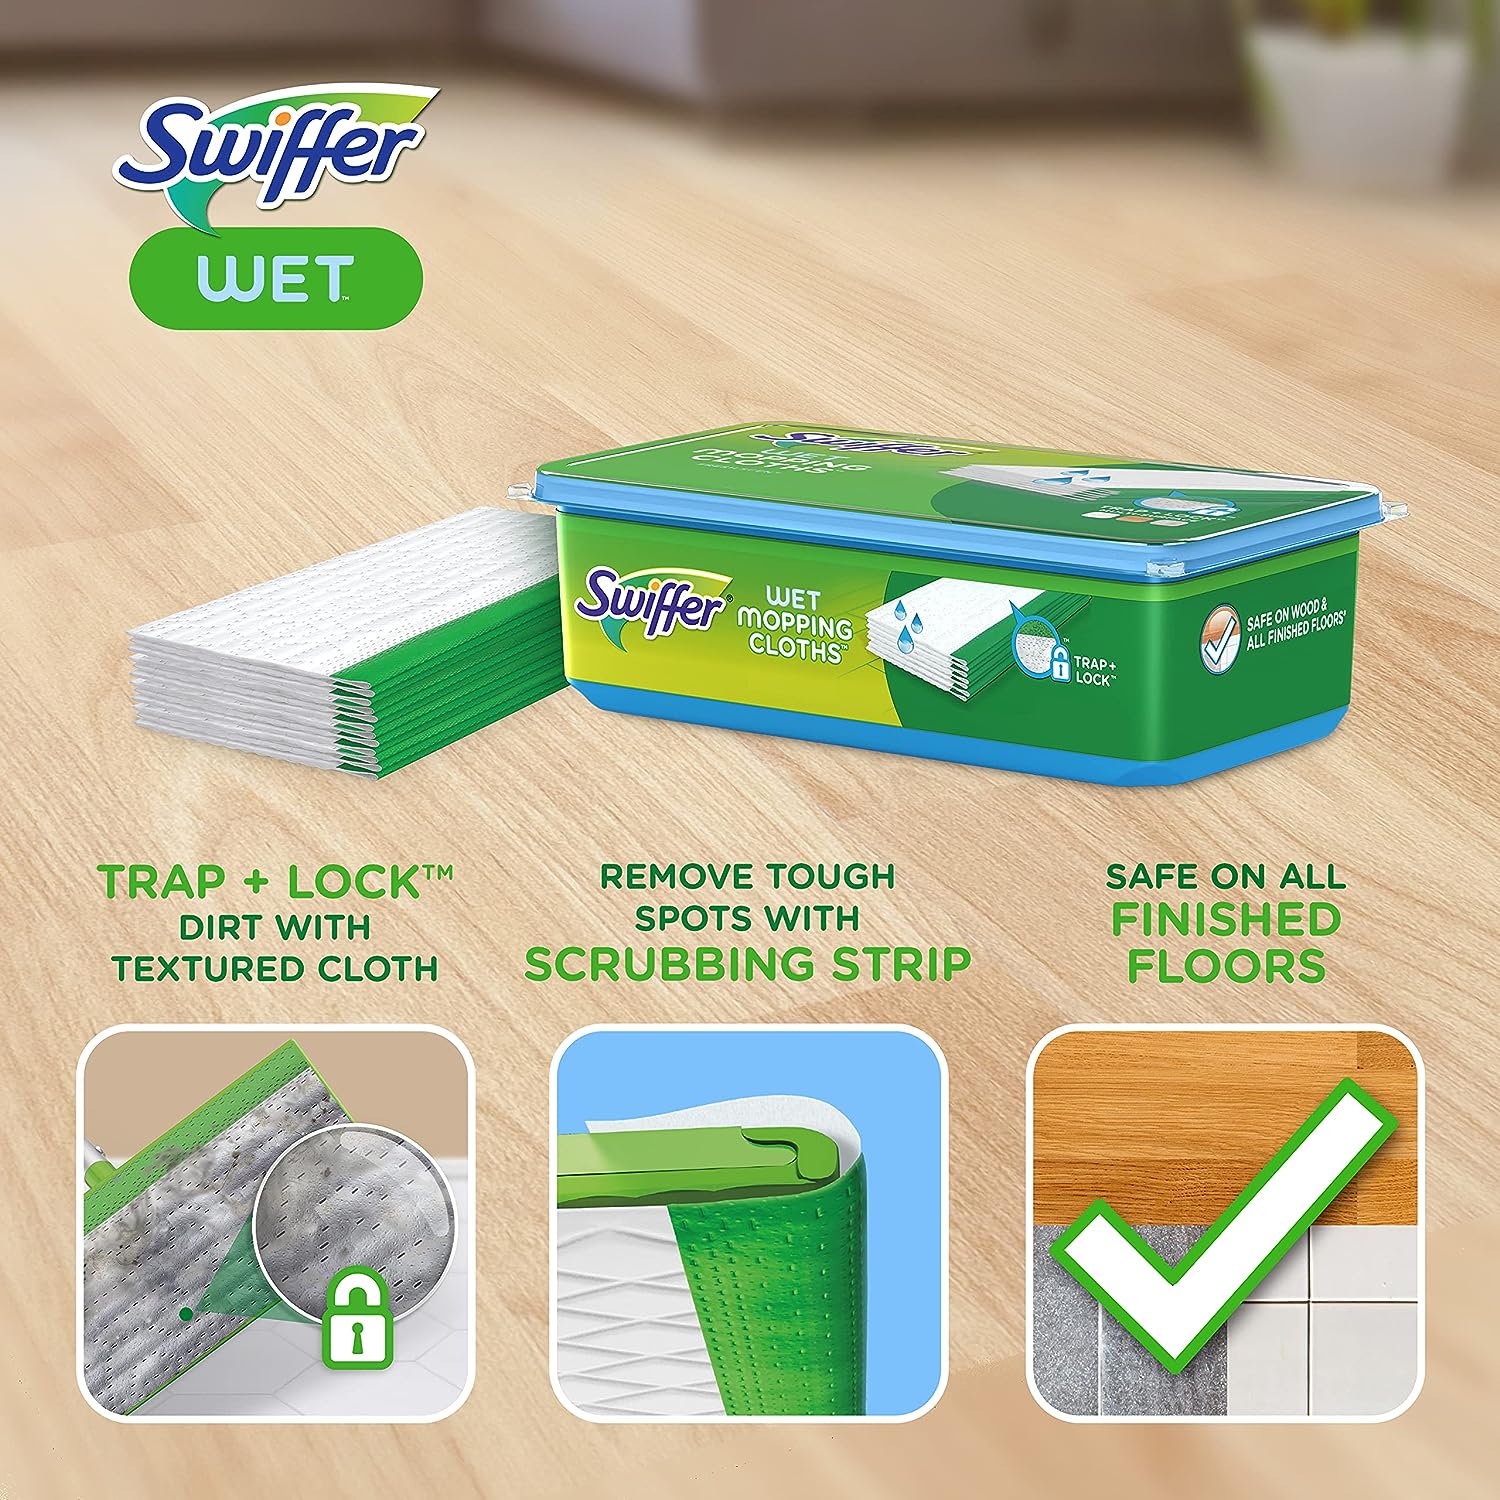 Swiffer Sweeper 2-en-1, limpiador de piso de superficie múltiple seco y  húmedo, barrido y mopping kit de inicio. Incluye 1 mop + 19 recargas